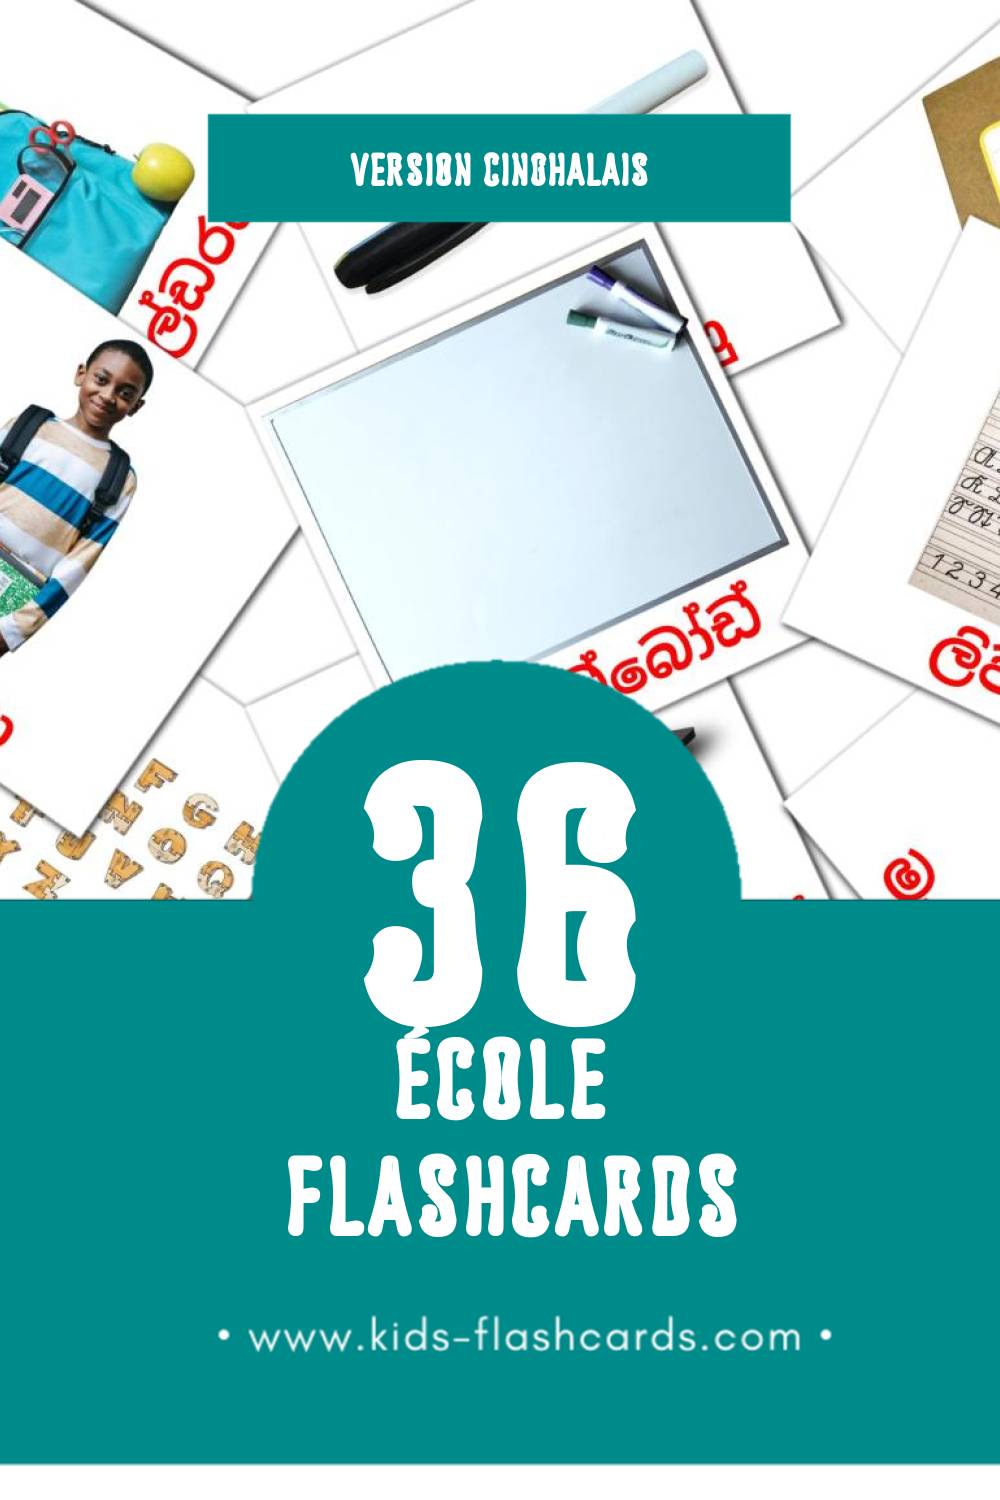 Flashcards Visual පාසලේ pour les tout-petits (36 cartes en Cinghalais)